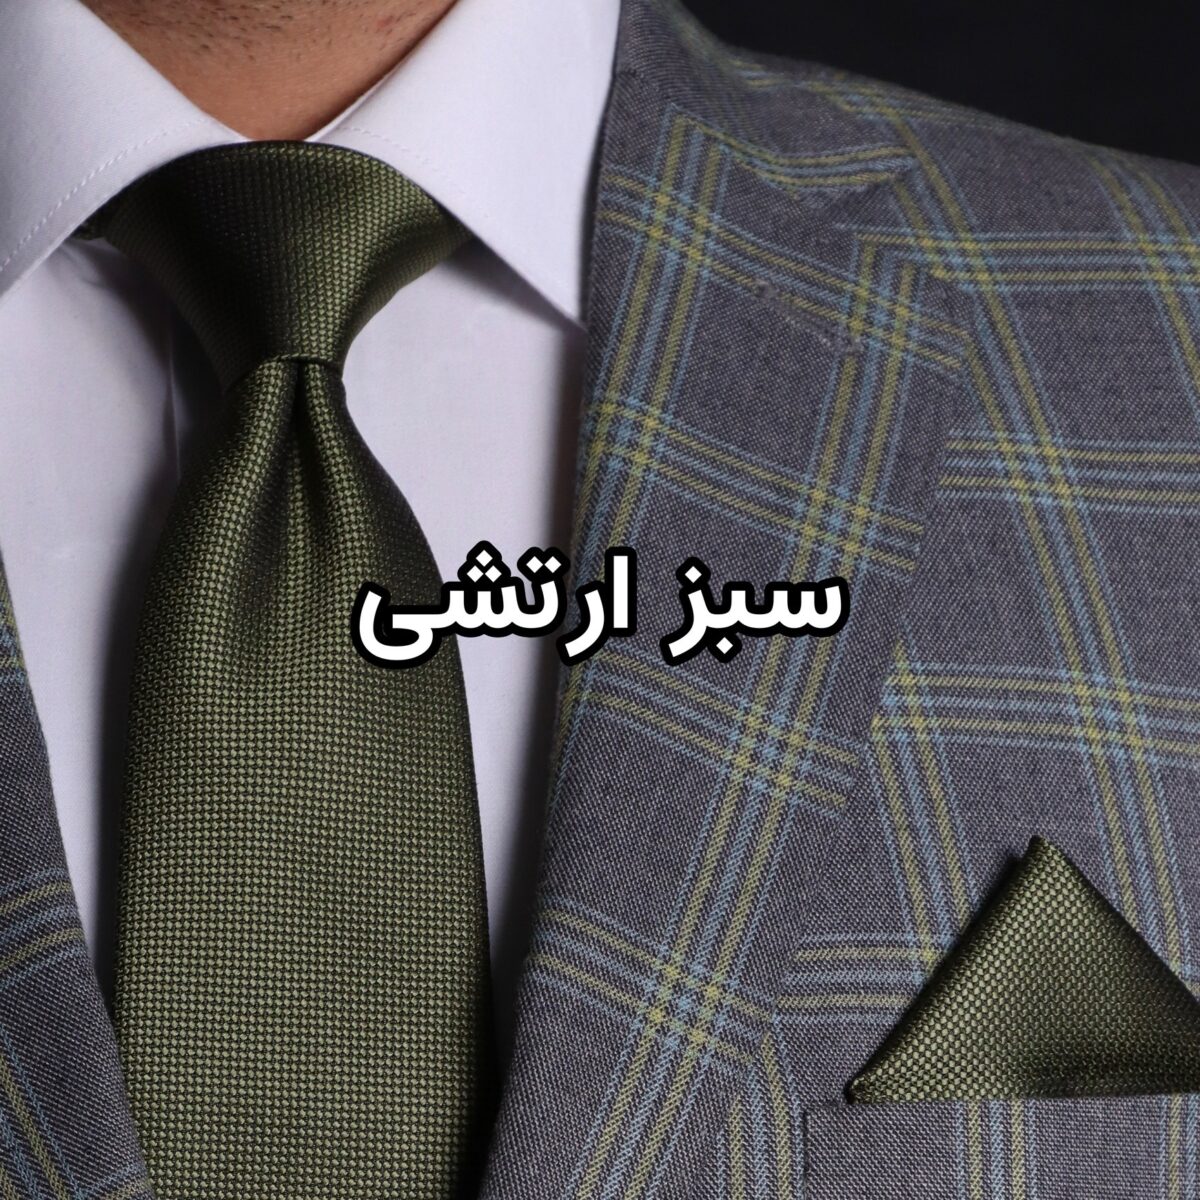 ست کراوات و پوشت ساده NESEN طرح آکسفورد PL4